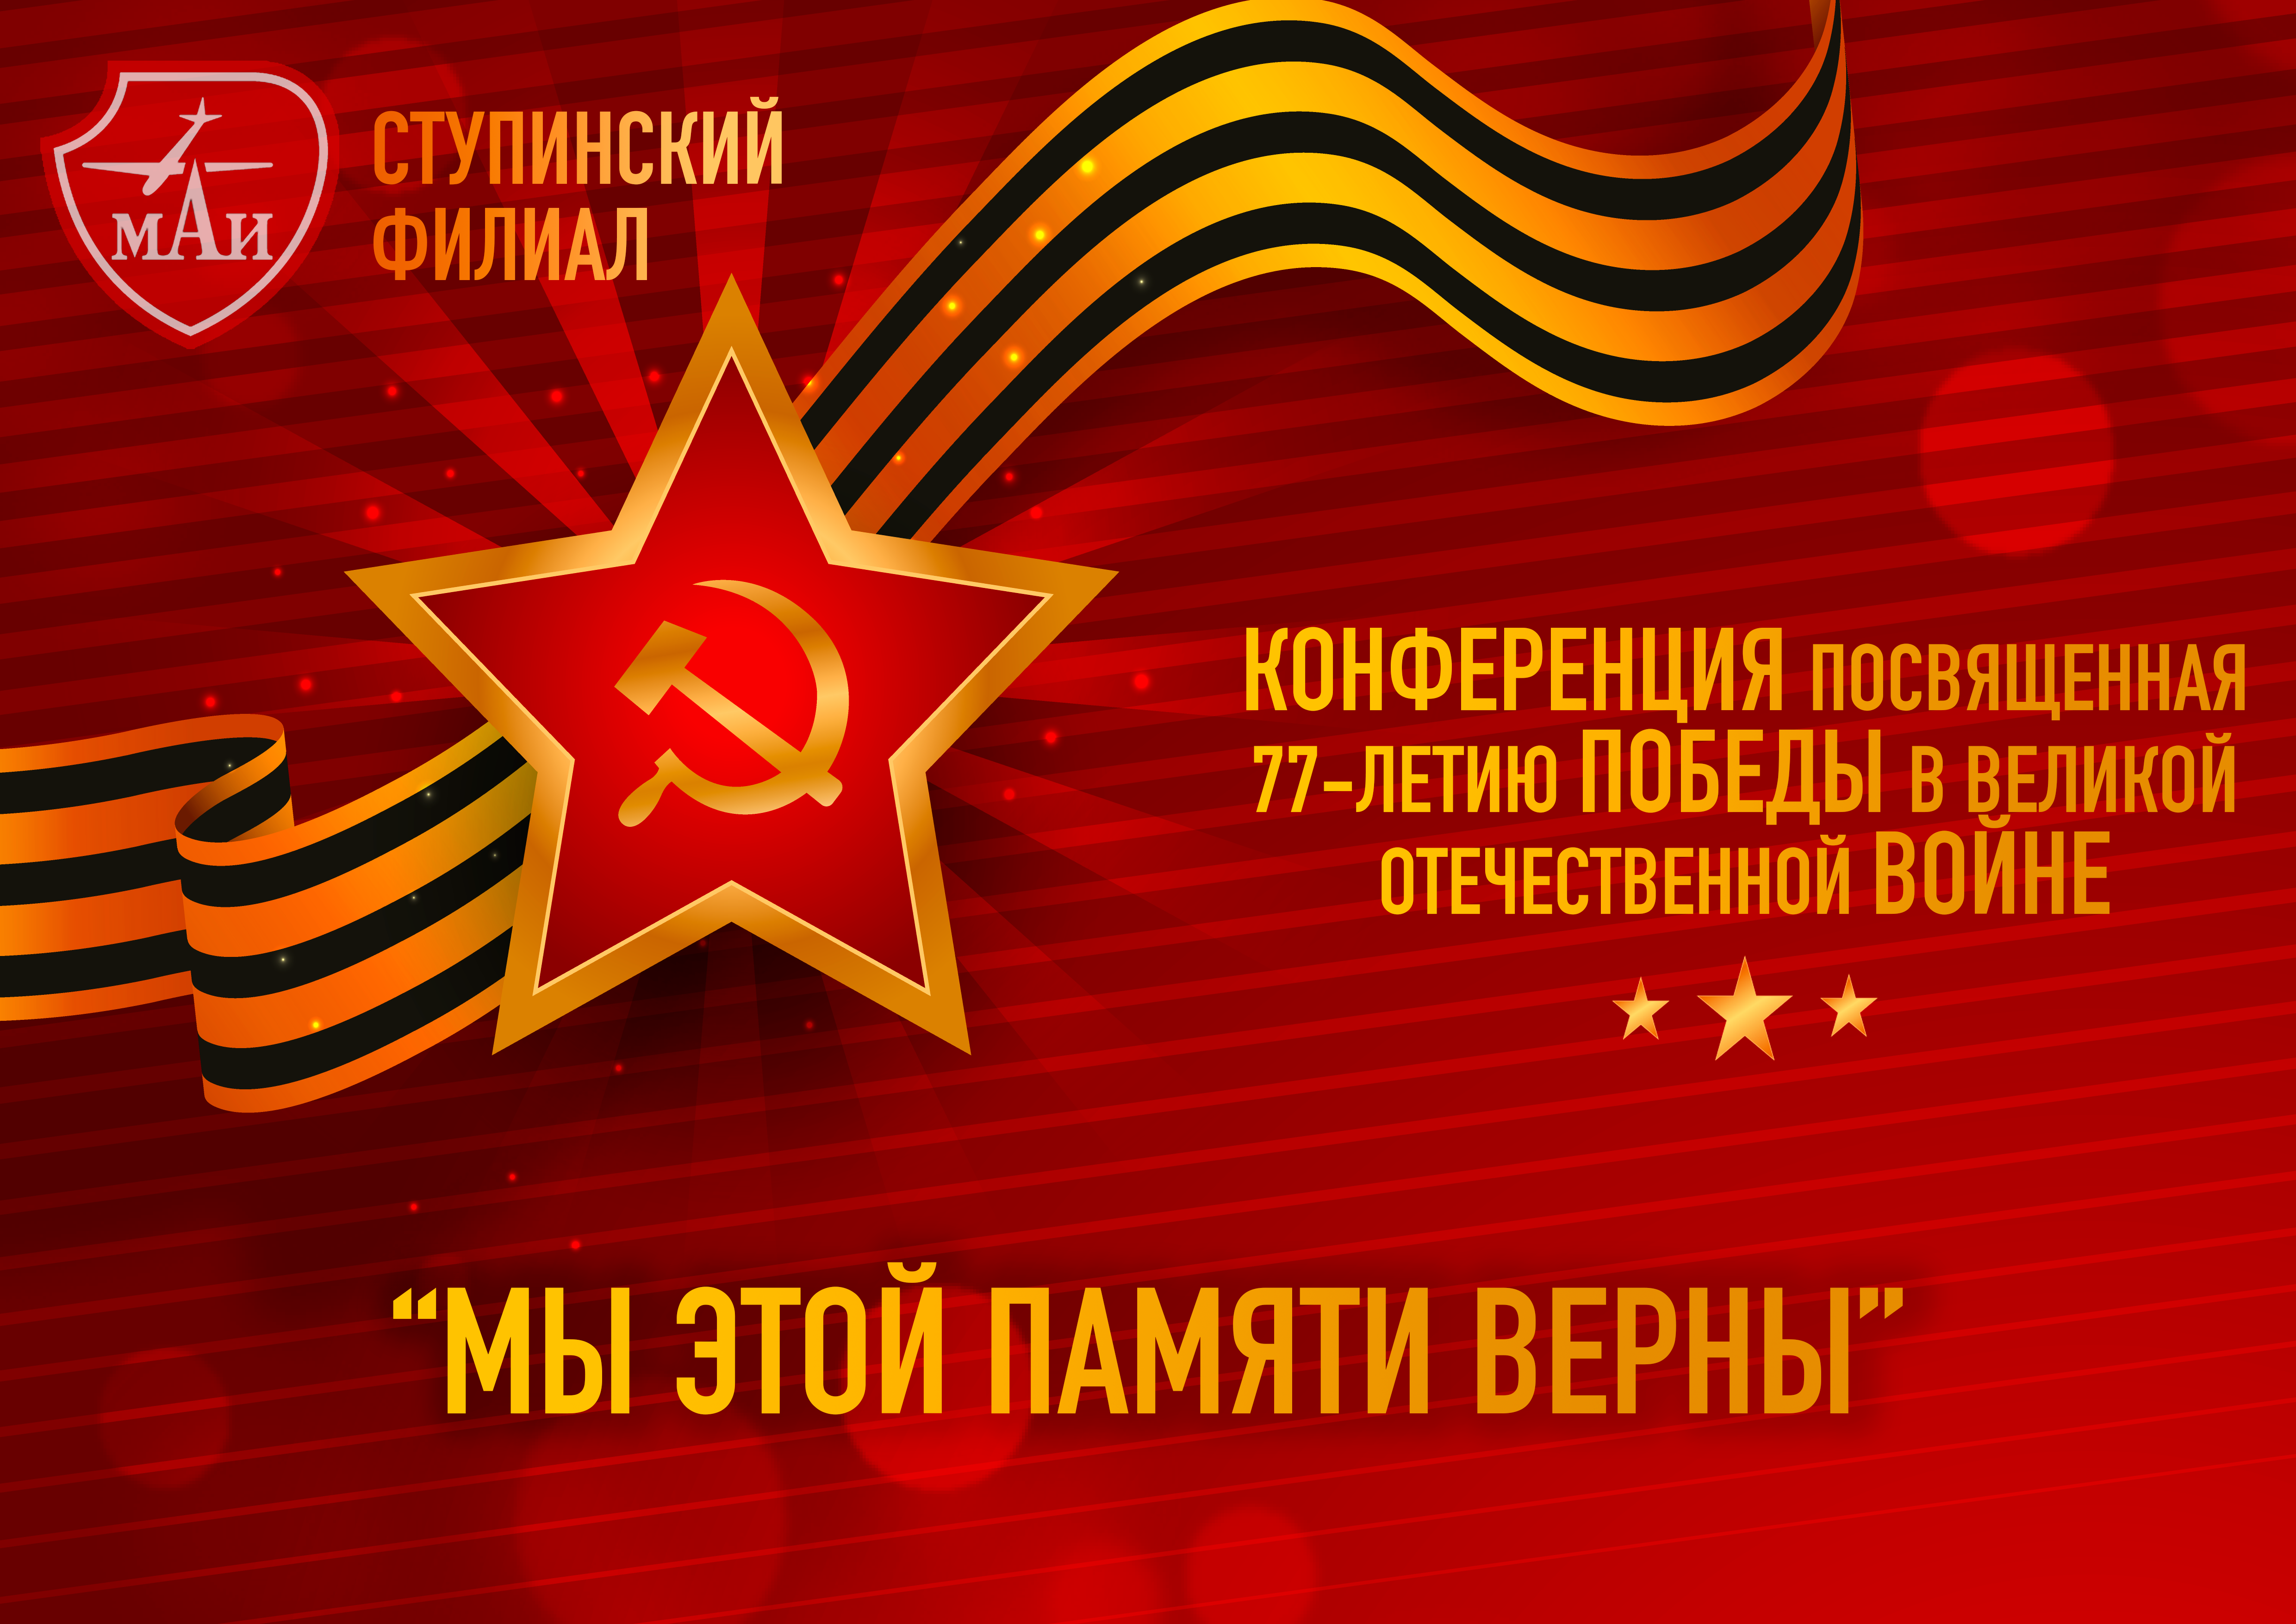 Конференция посвященная 77-летию победы в Великой Отечественной войне "Мы этой памяти верны"